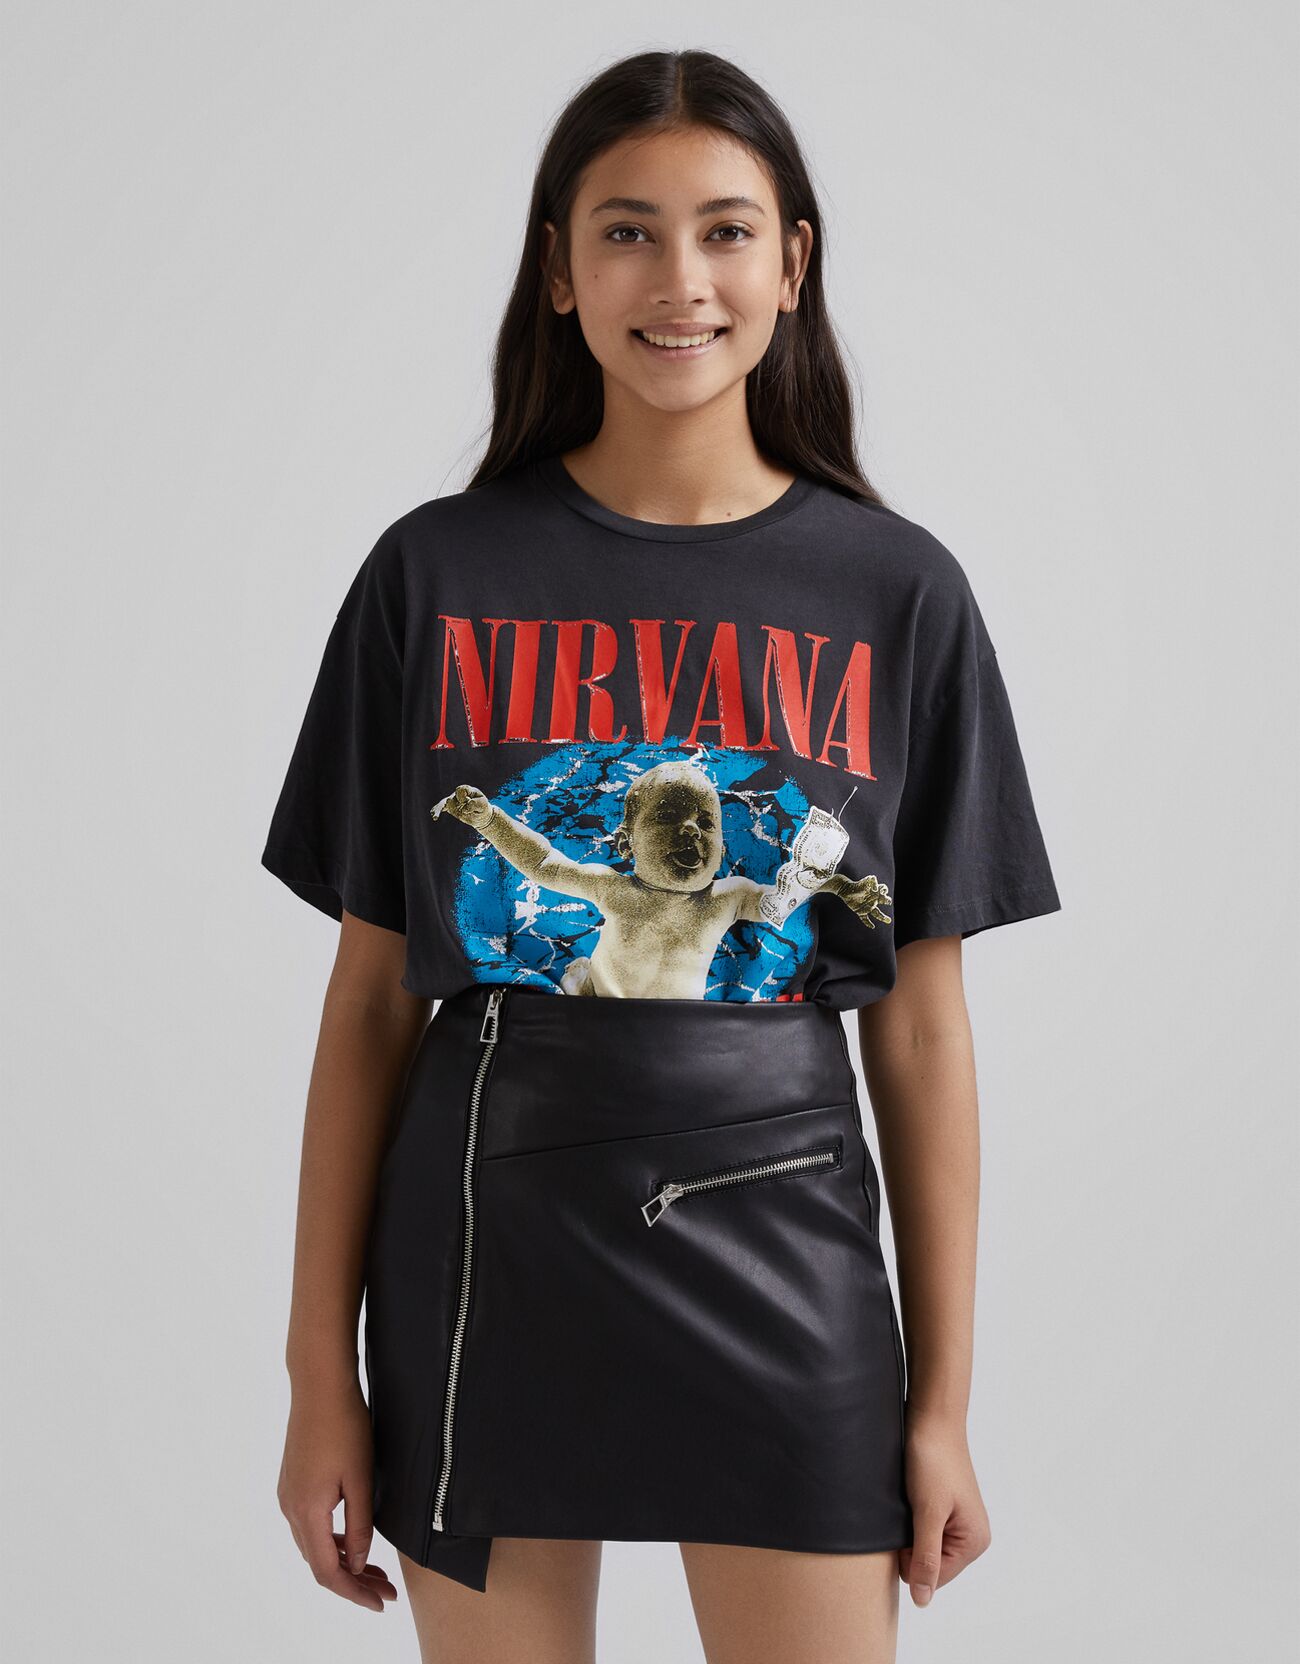 Bershka Camiseta Nirvana Mujer M Negro